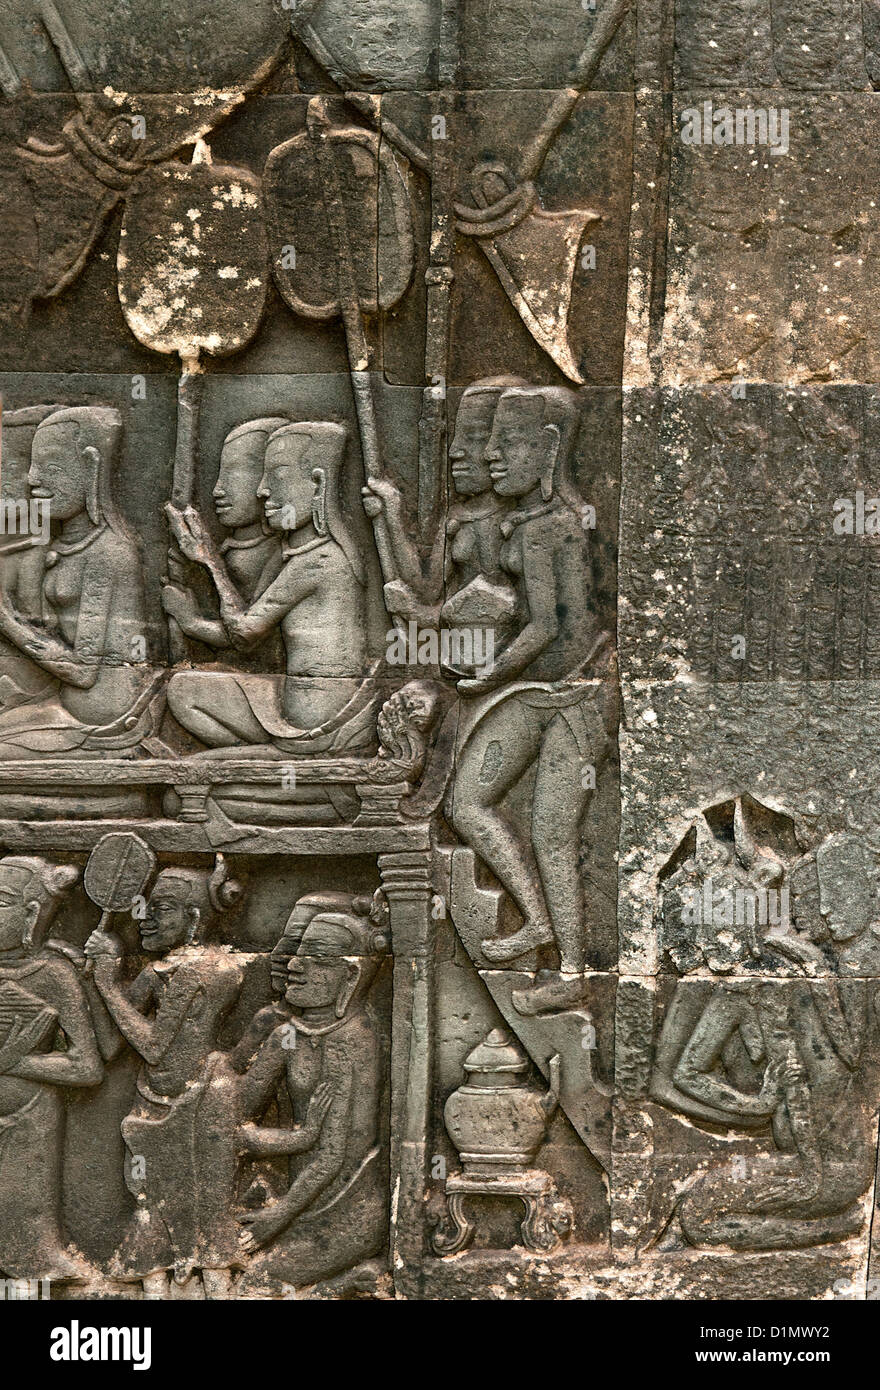 Bas-relief sculpté dans la pierre représentant l'adoration de la femme à un temple, temple Bayon, Angkor Thom, Siem Reap, Cambodge Banque D'Images